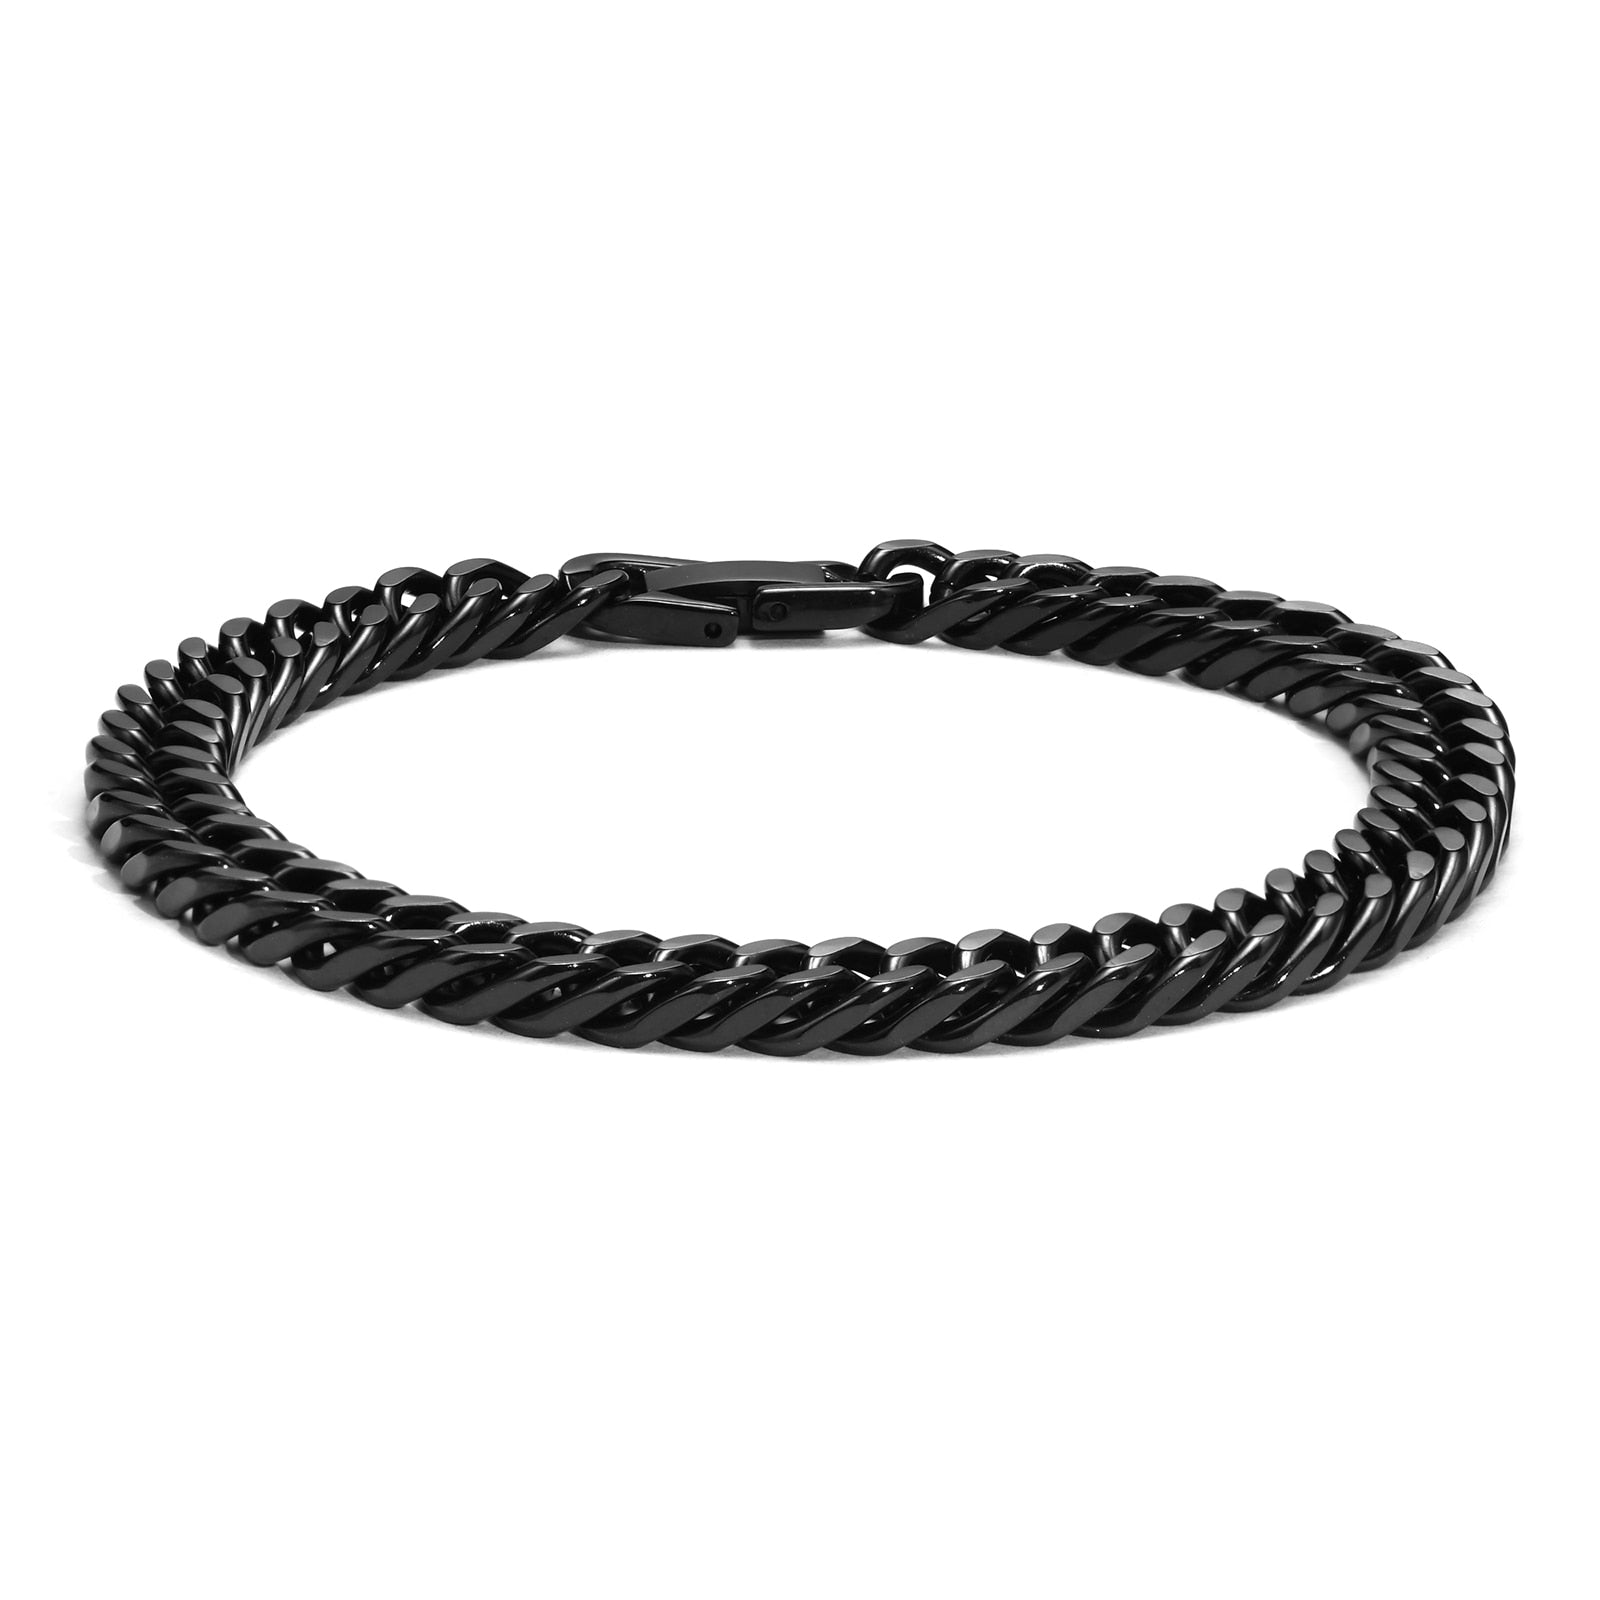 Double Curb Chain Bracelet - Zariar.comDouble Curb Chain BraceletZariar.comZariar.com200001034:5740#1319B;200000639:2014524161319B19cmDouble Curb Chain Bracelet